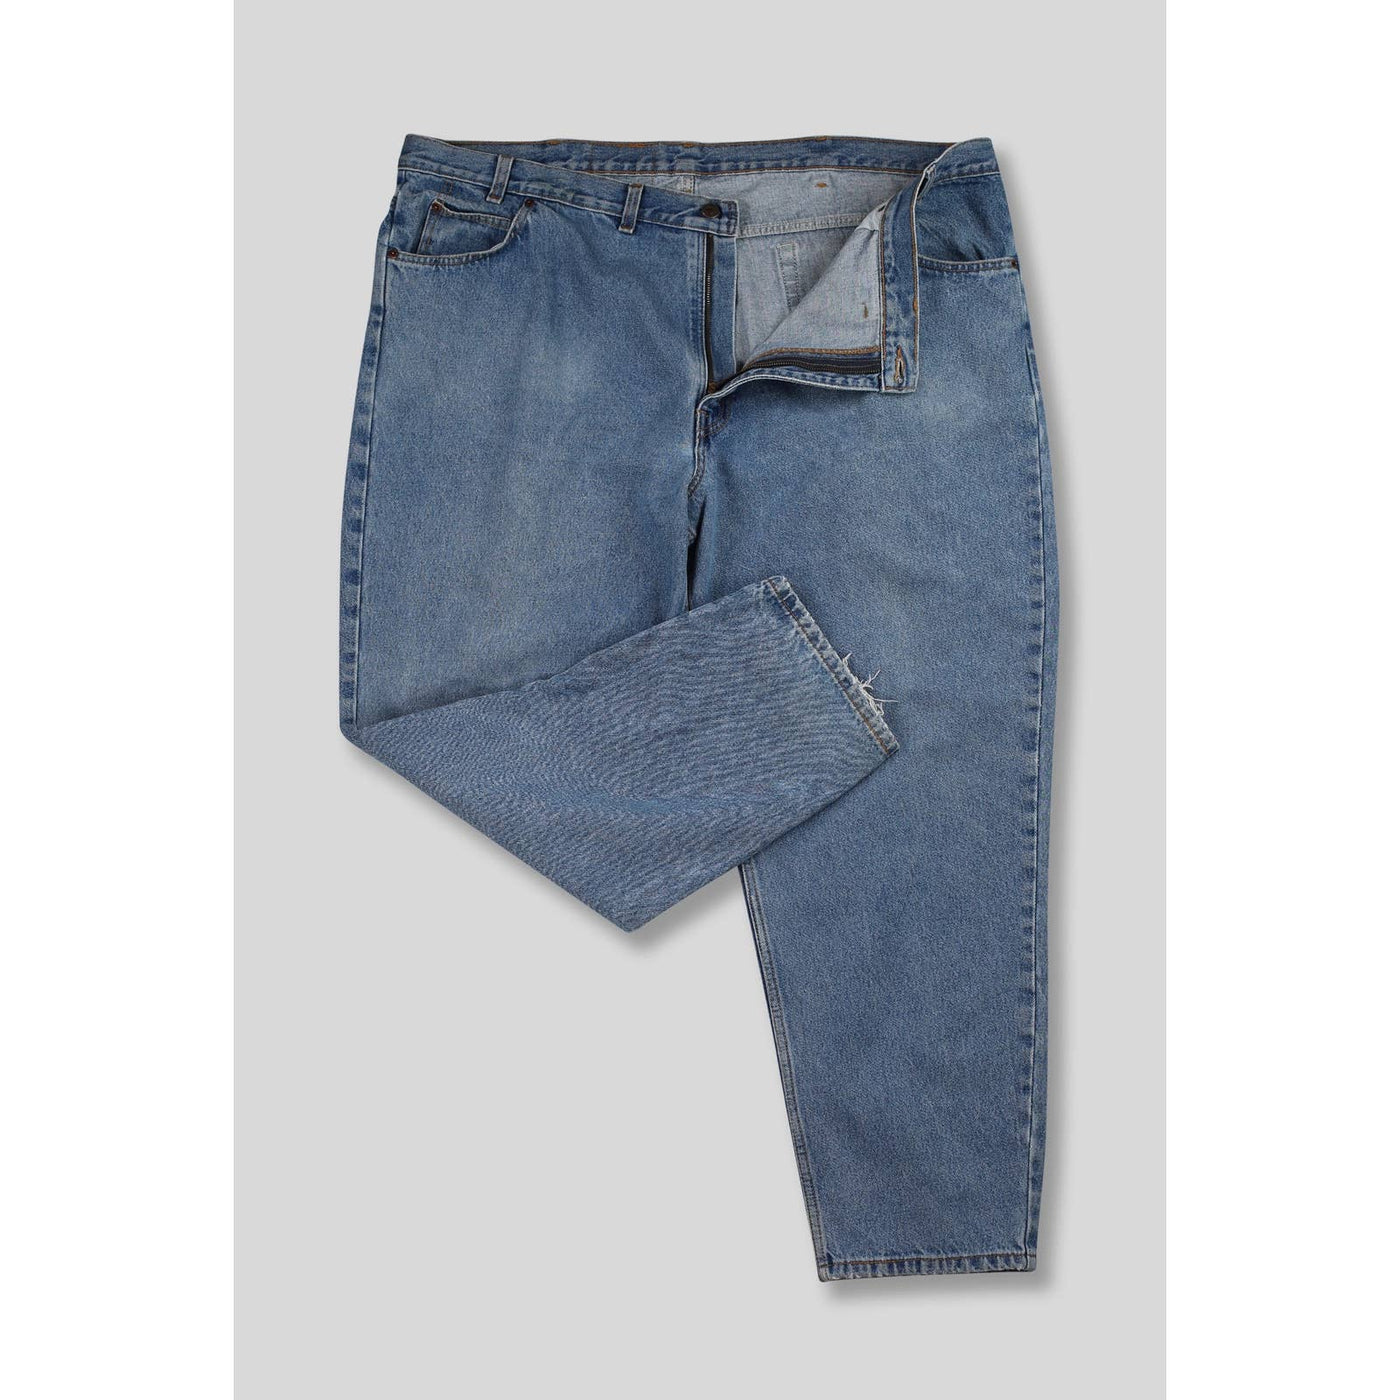 Vintage Levi’s 506 Straight Leg Medium Wash Jeans